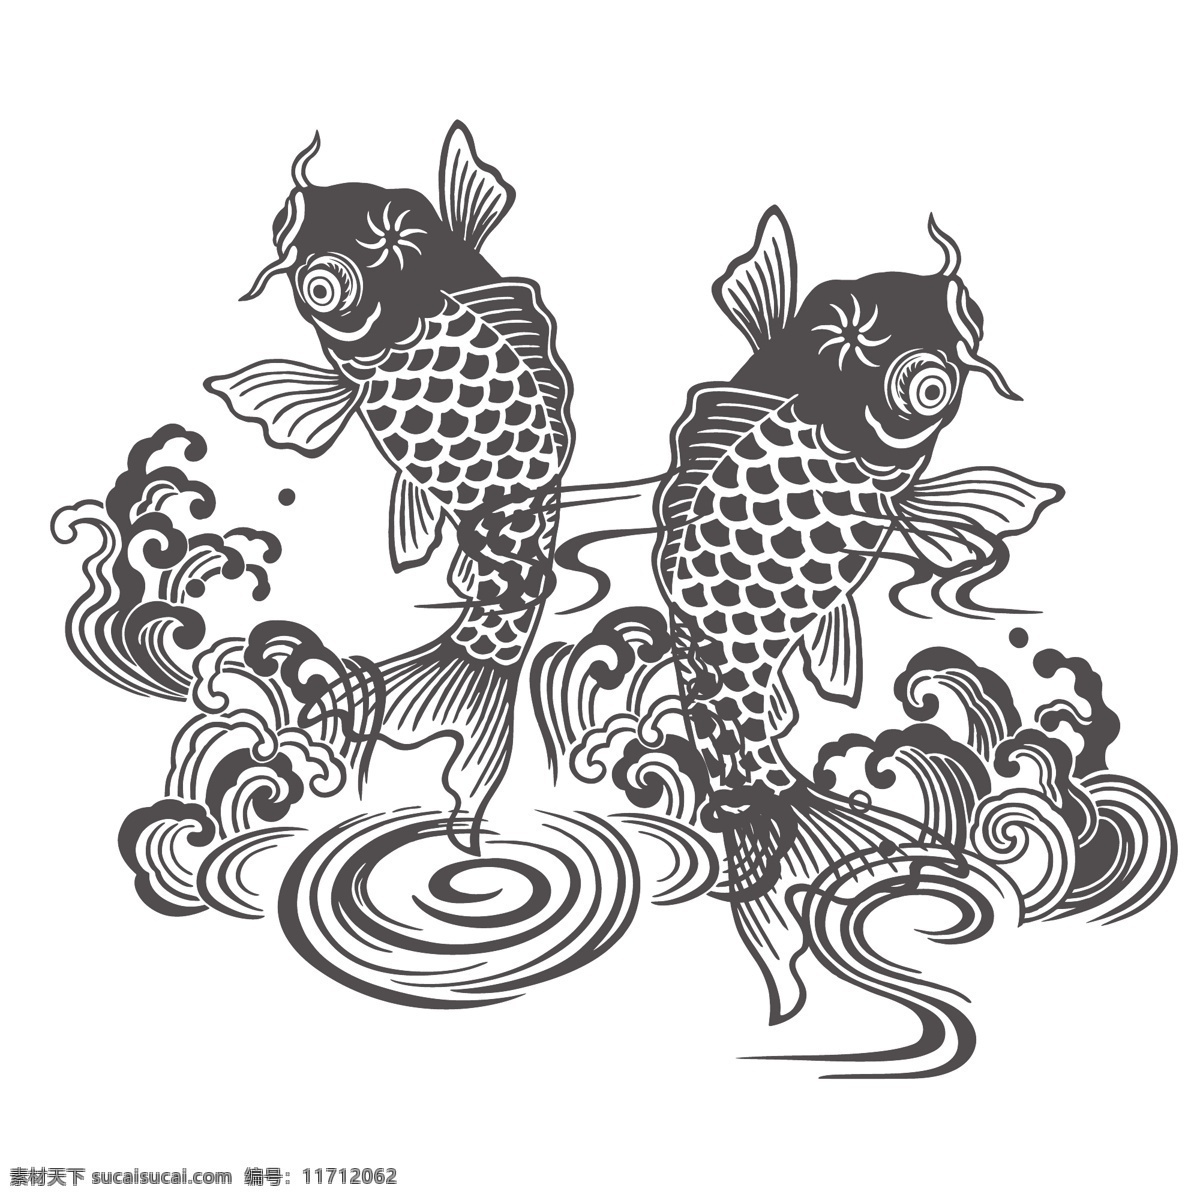 山海经 怪物 插画 中式 复古 中国风 传统文化 绘画 涂鸦 精美 怪兽 麒麟 龙 凤凰 鱼 装饰图案 文化艺术 绘画书法